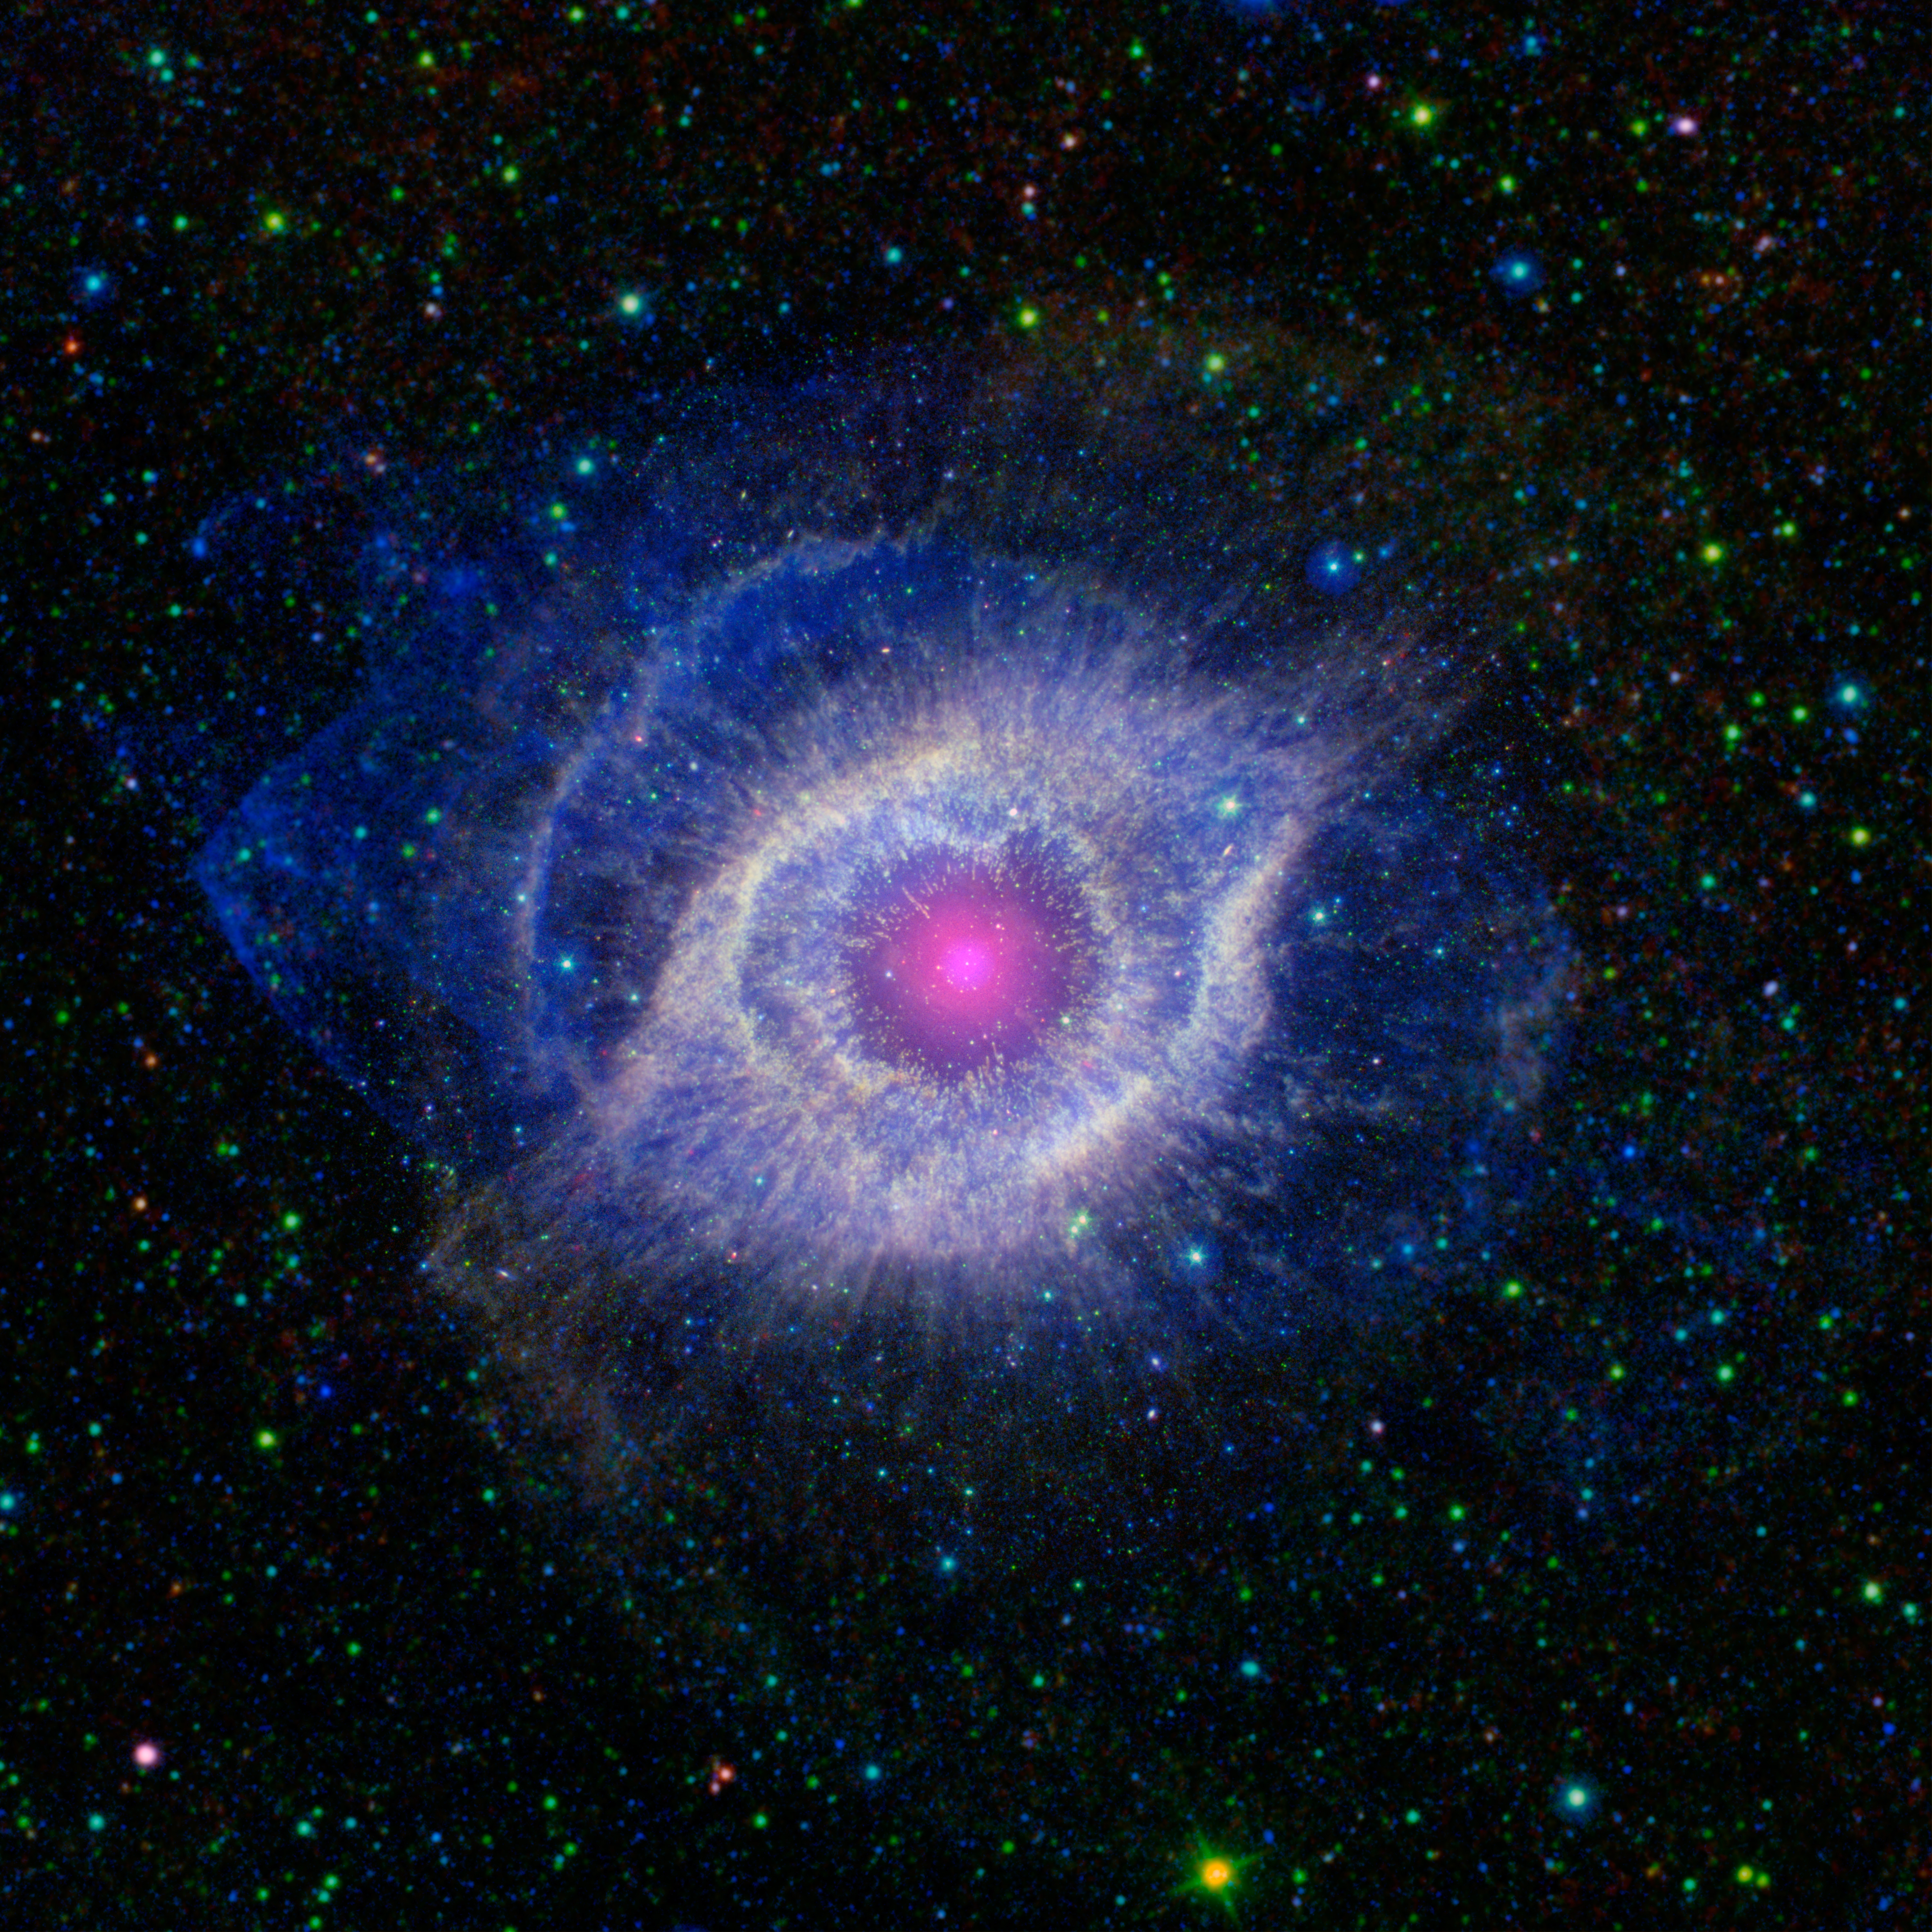 NASA helix nebula spitzer galex